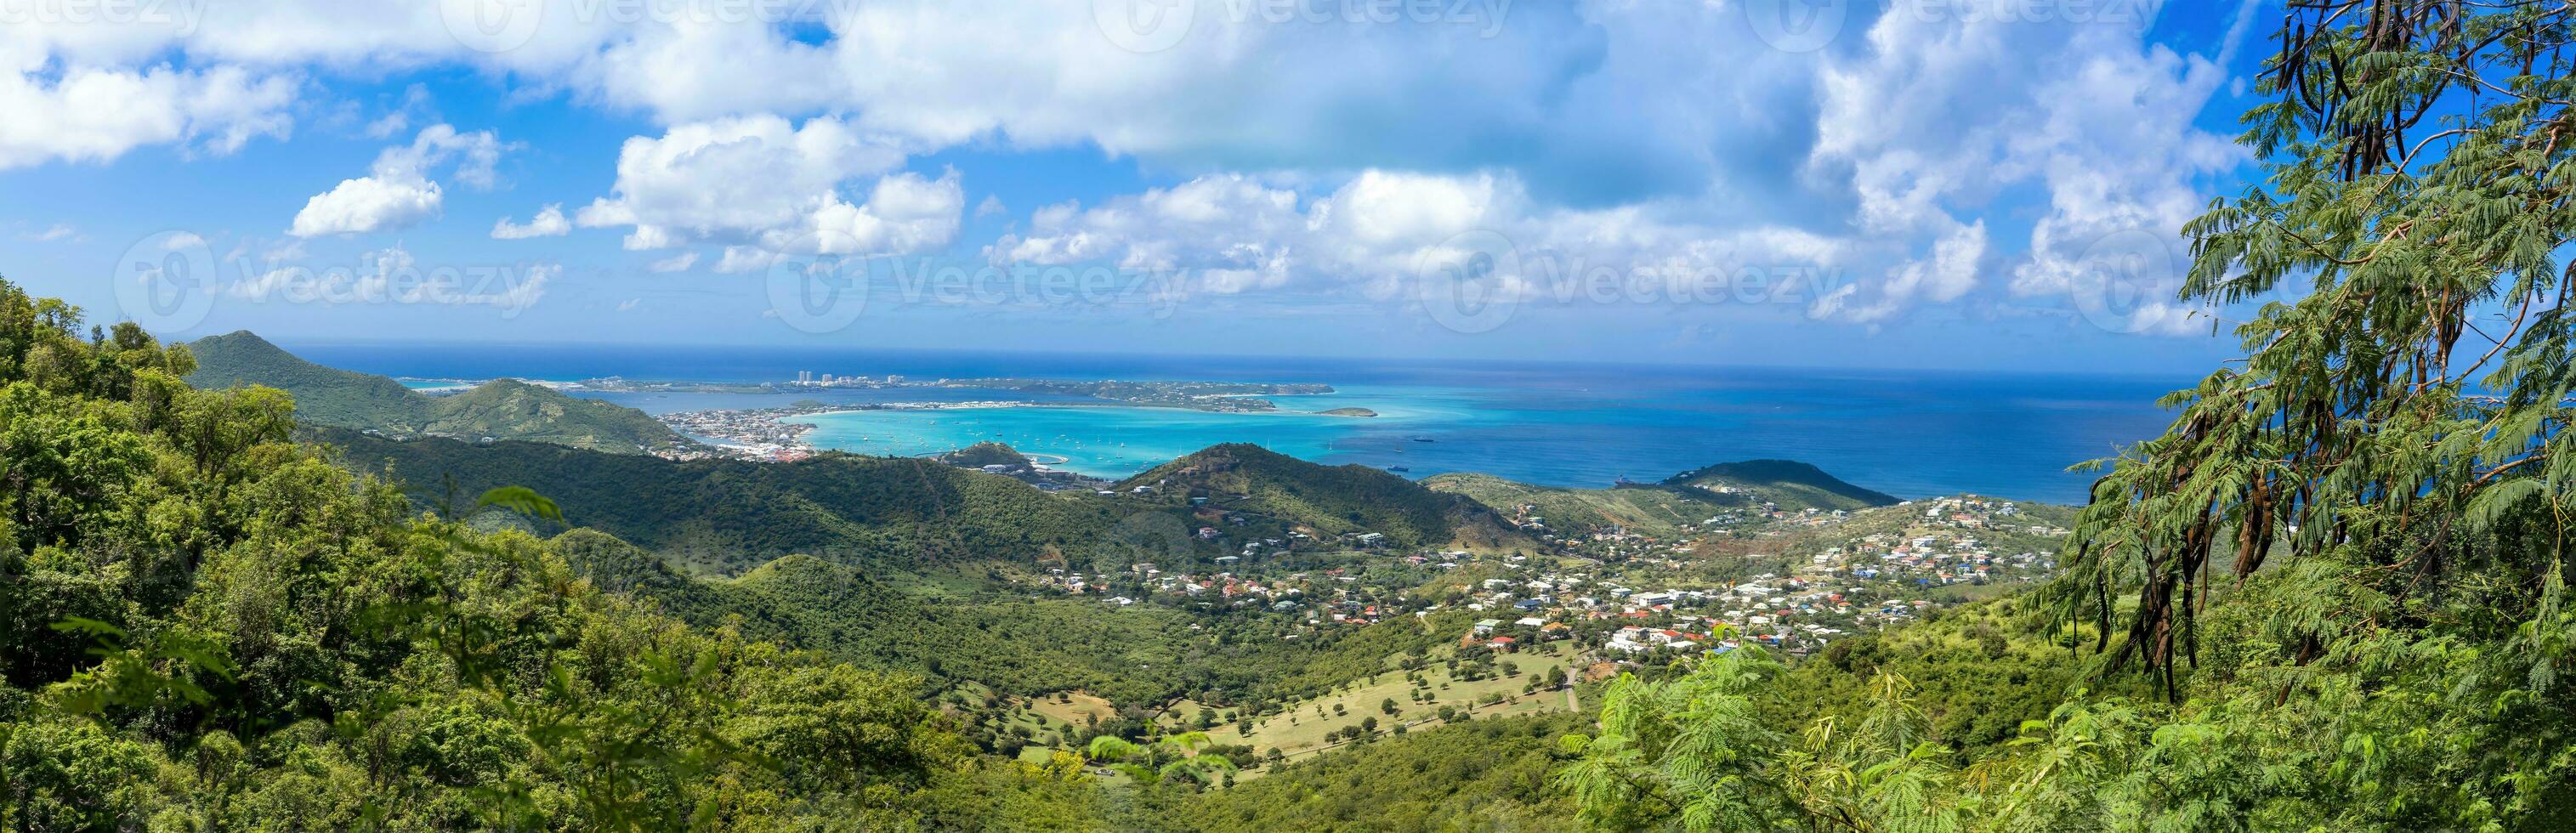 karibiska kryssning semester, panorama- horisont av helgon Martin ö från bild paradis se upp foto